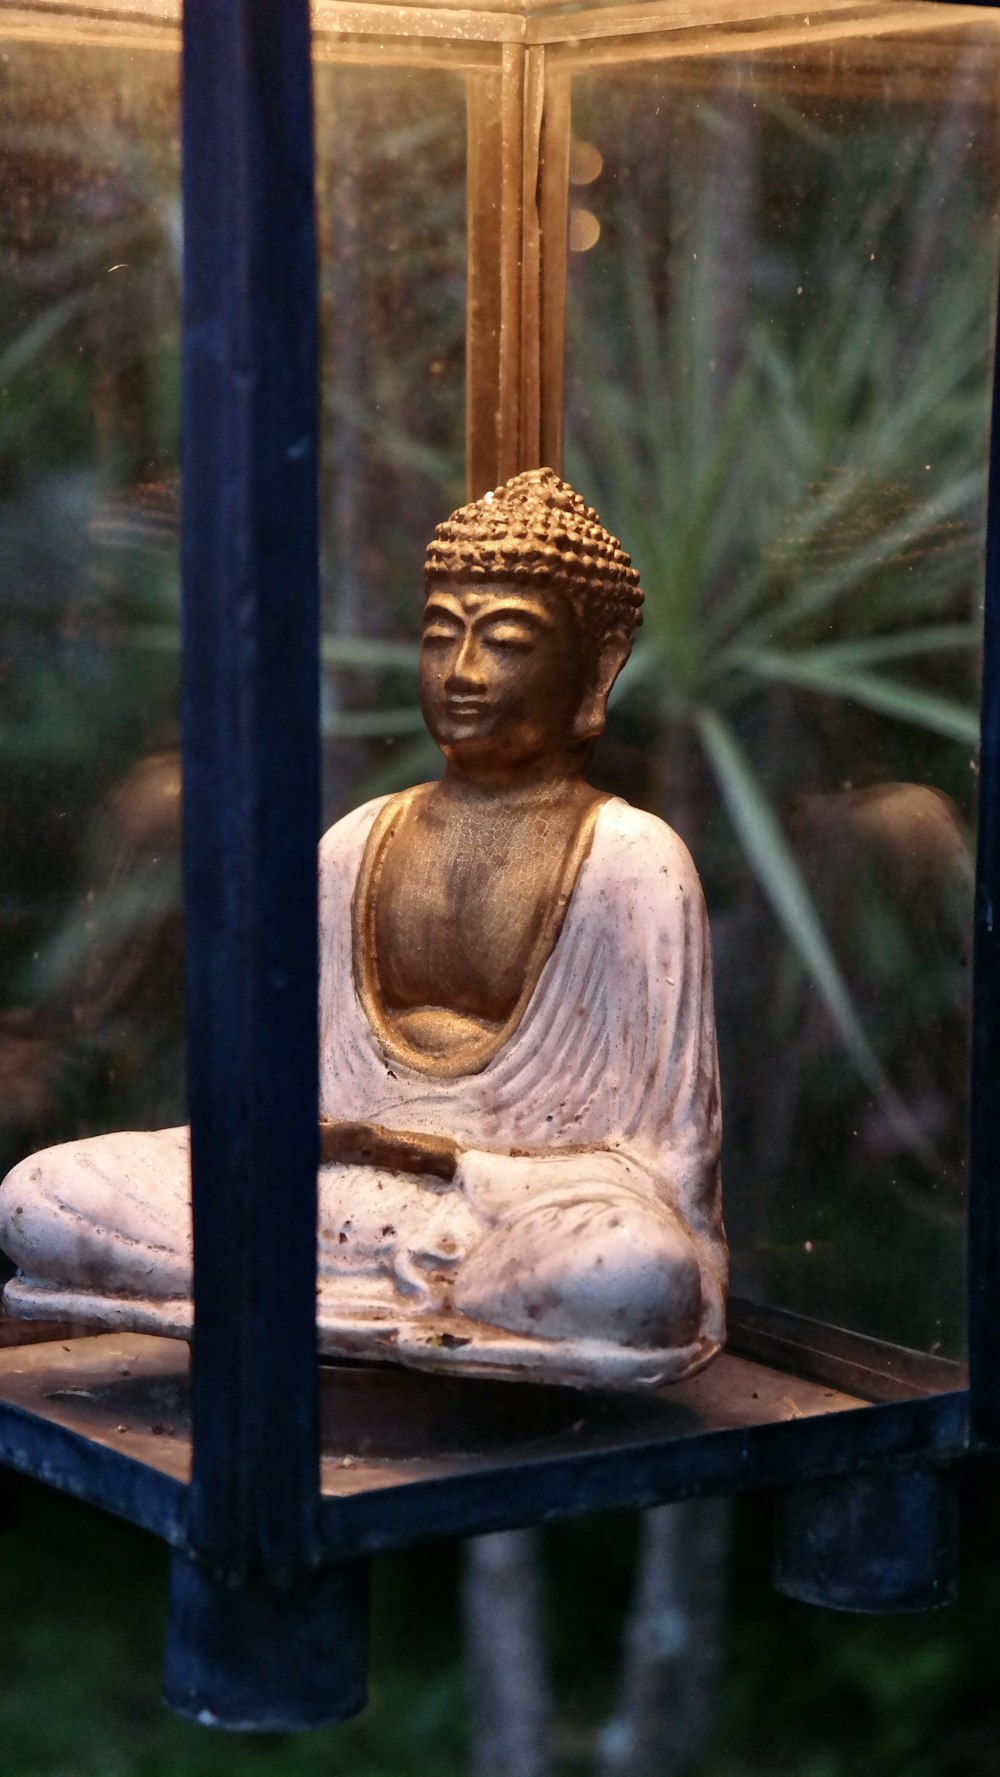 a buddha statue sitting in a glass case